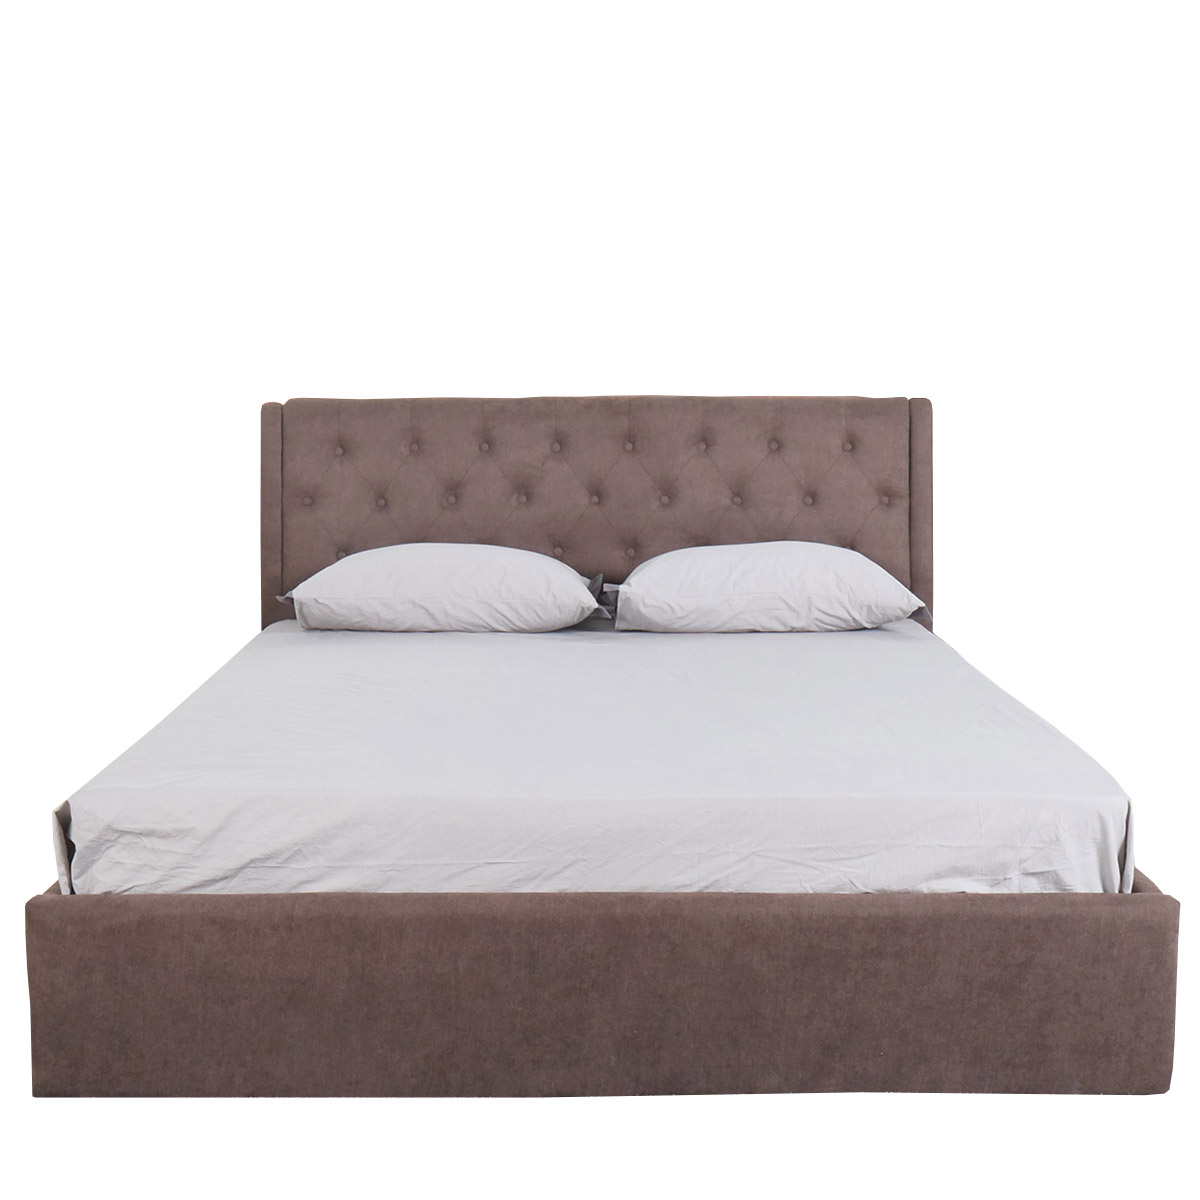 Κρεβάτι ASTER Σκούρο Καφέ Ύφασμα Με Αποθηκευτικό Χώρο 219x170x104cm